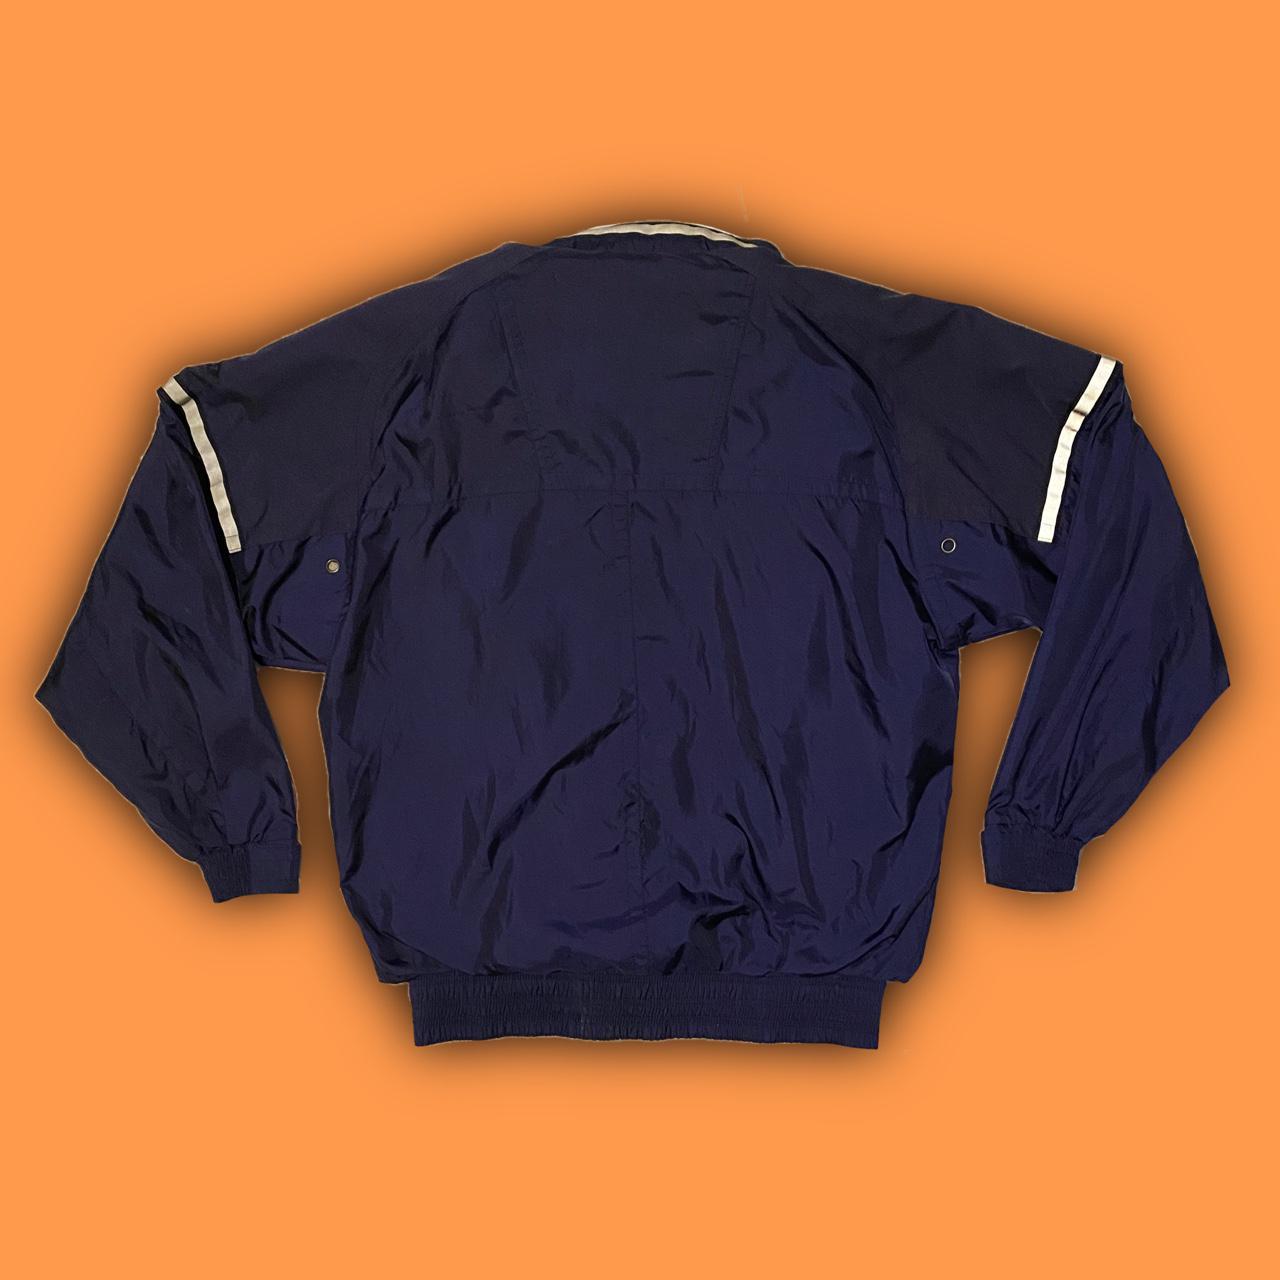 Product Image 3 - Nevica 90s jacket 

Size: fits